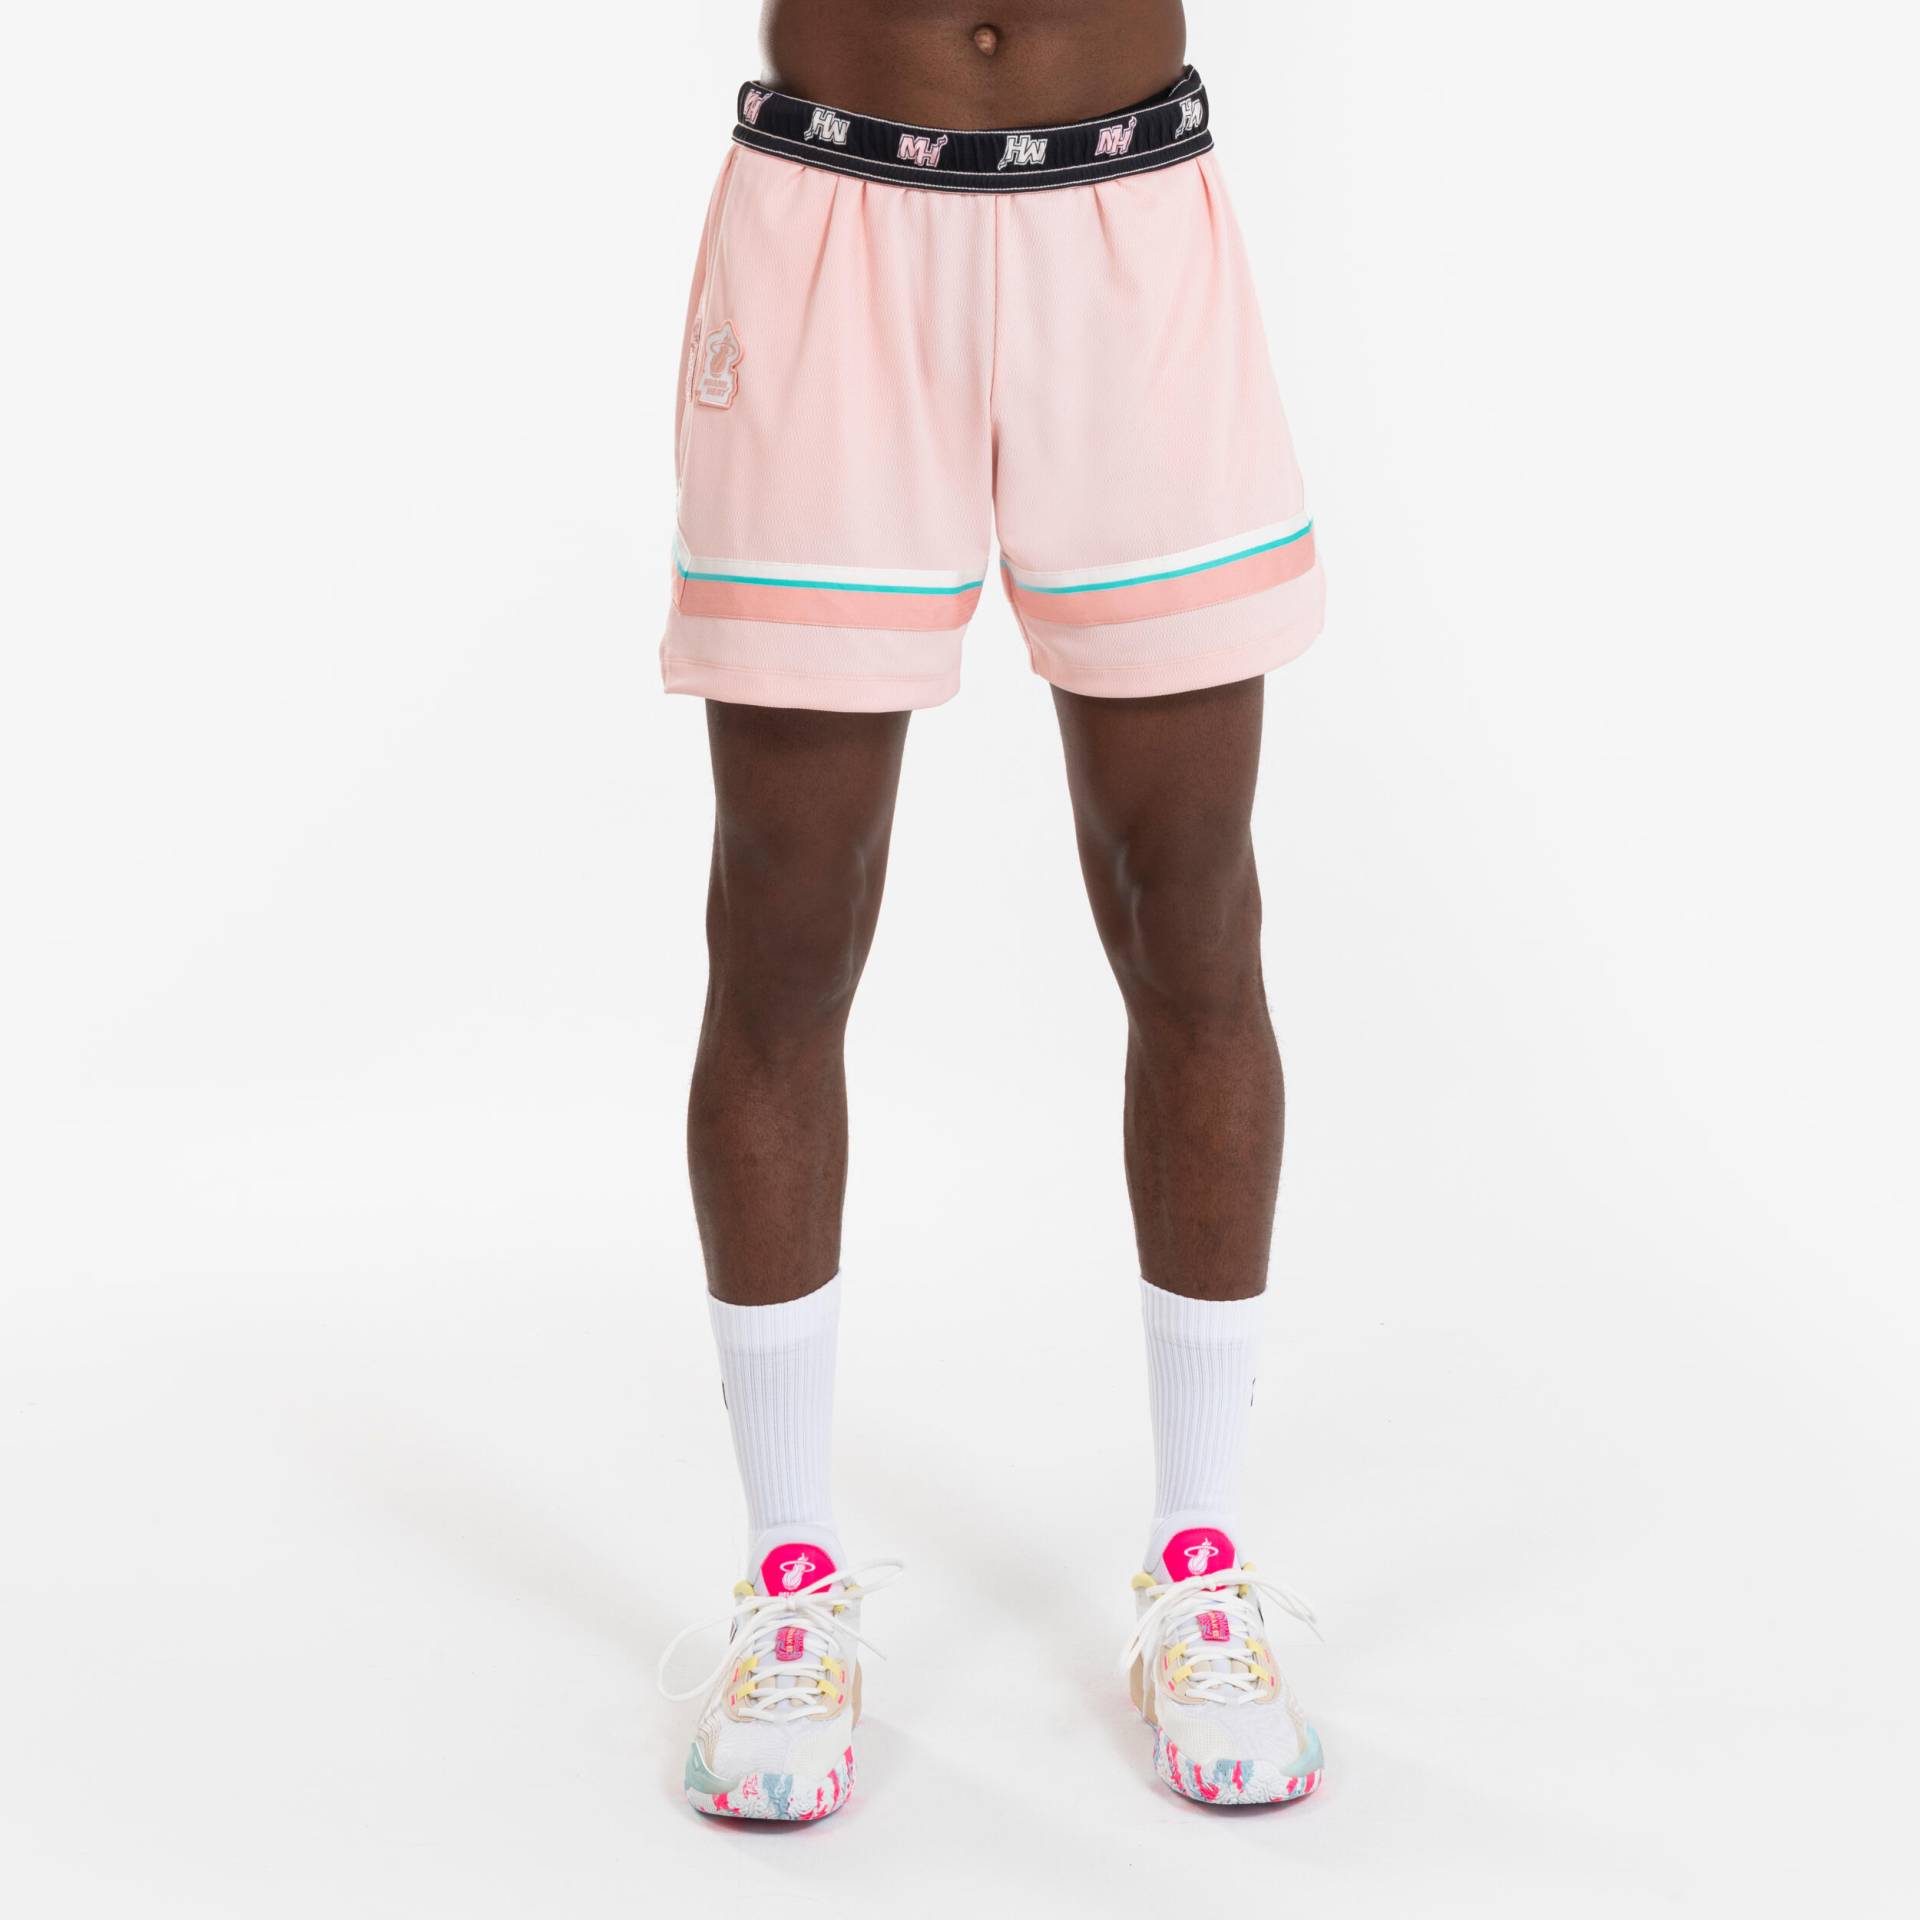 Damen/Herren Basketball Shorts NBA Miami Heat - SH 900 violett von TARMAK